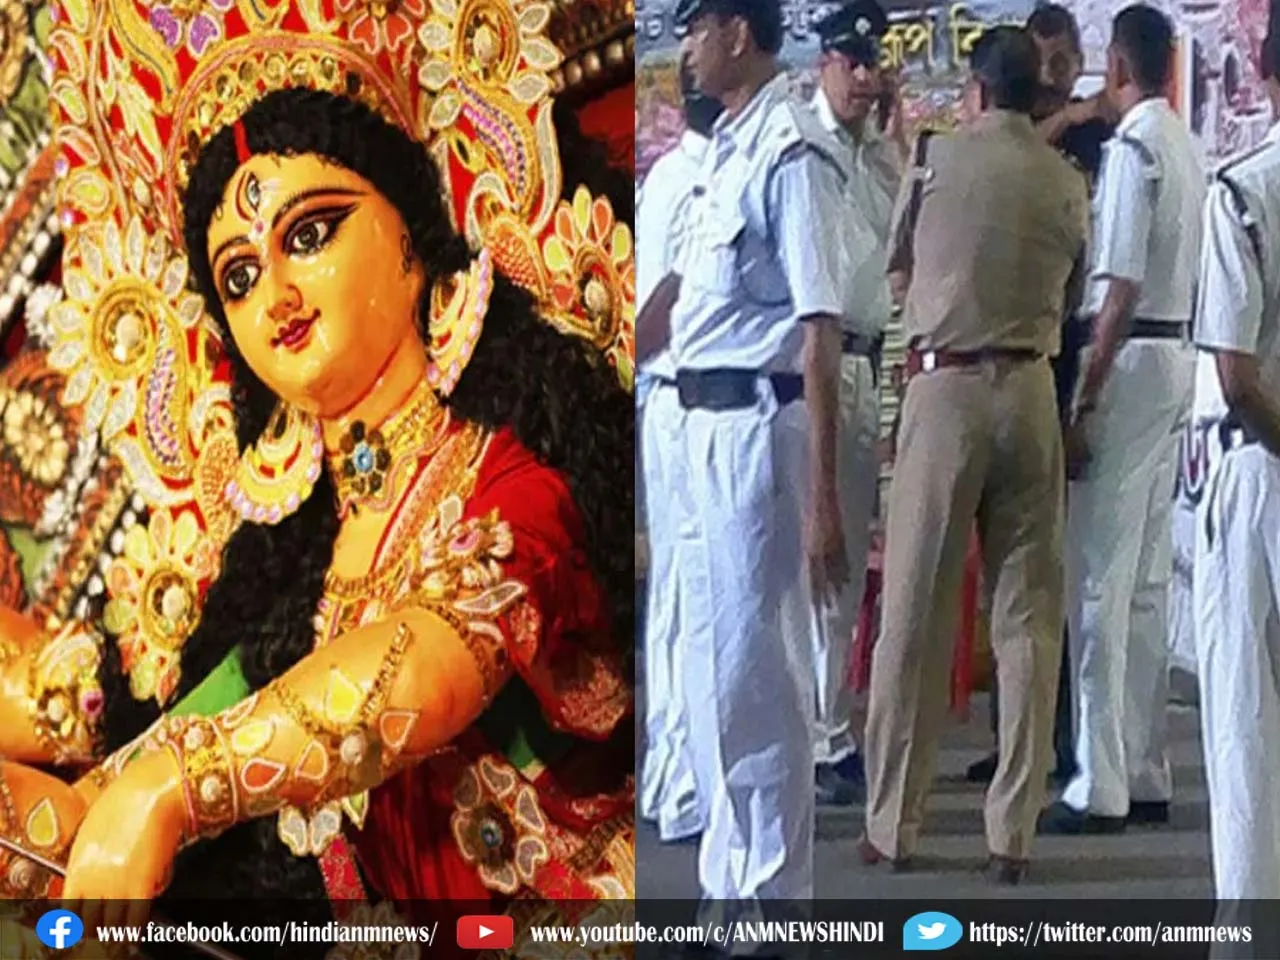 West Bengal News: कोलकाता में दुर्गा पूजा के लिए अभूतपूर्व सुरक्षा